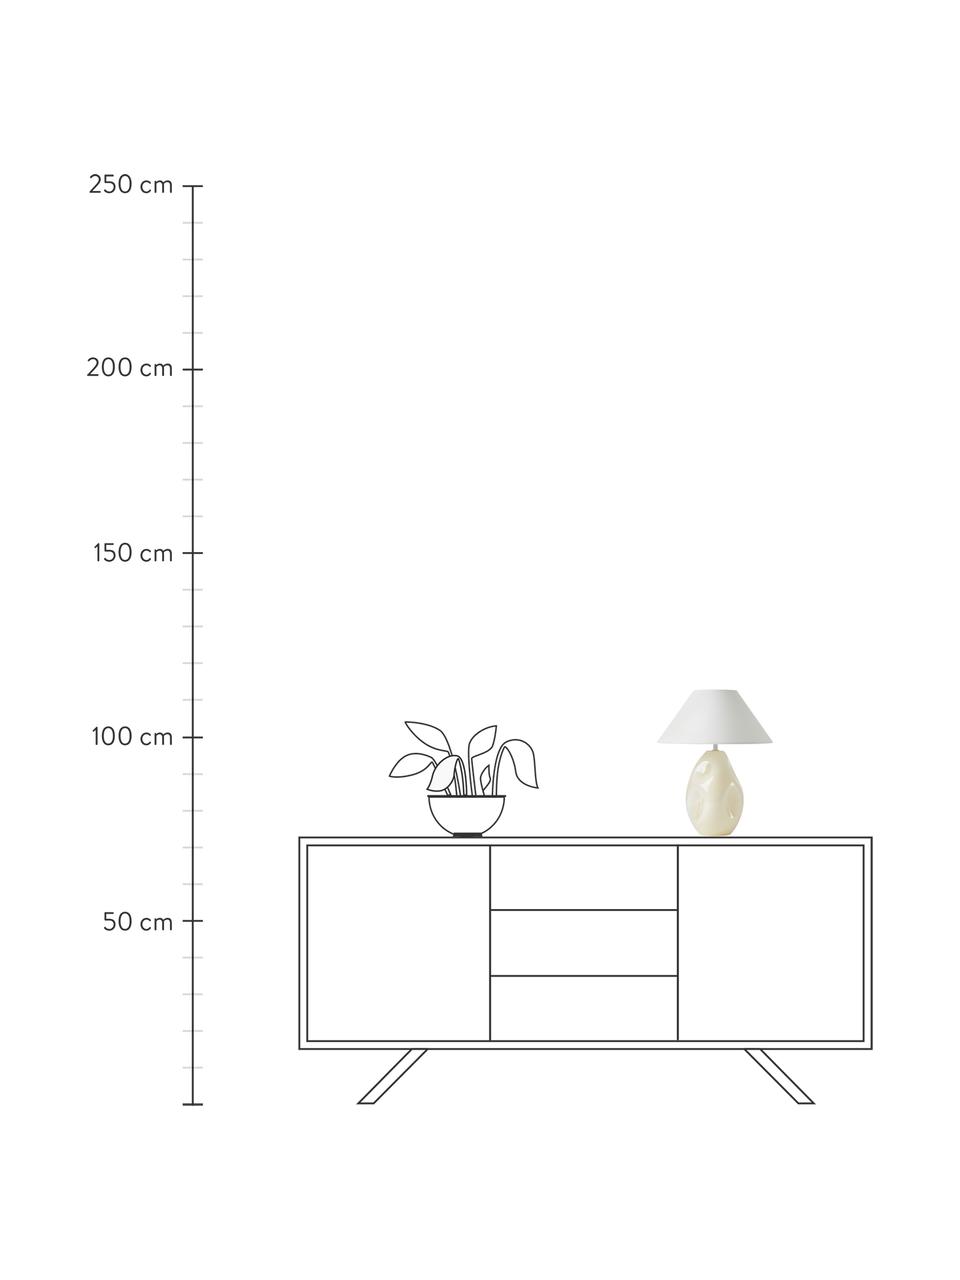 Lampa stołowa ze szkła opalowego Xilia, Kremowobiały, biały, Ø 40 x W 18 cm